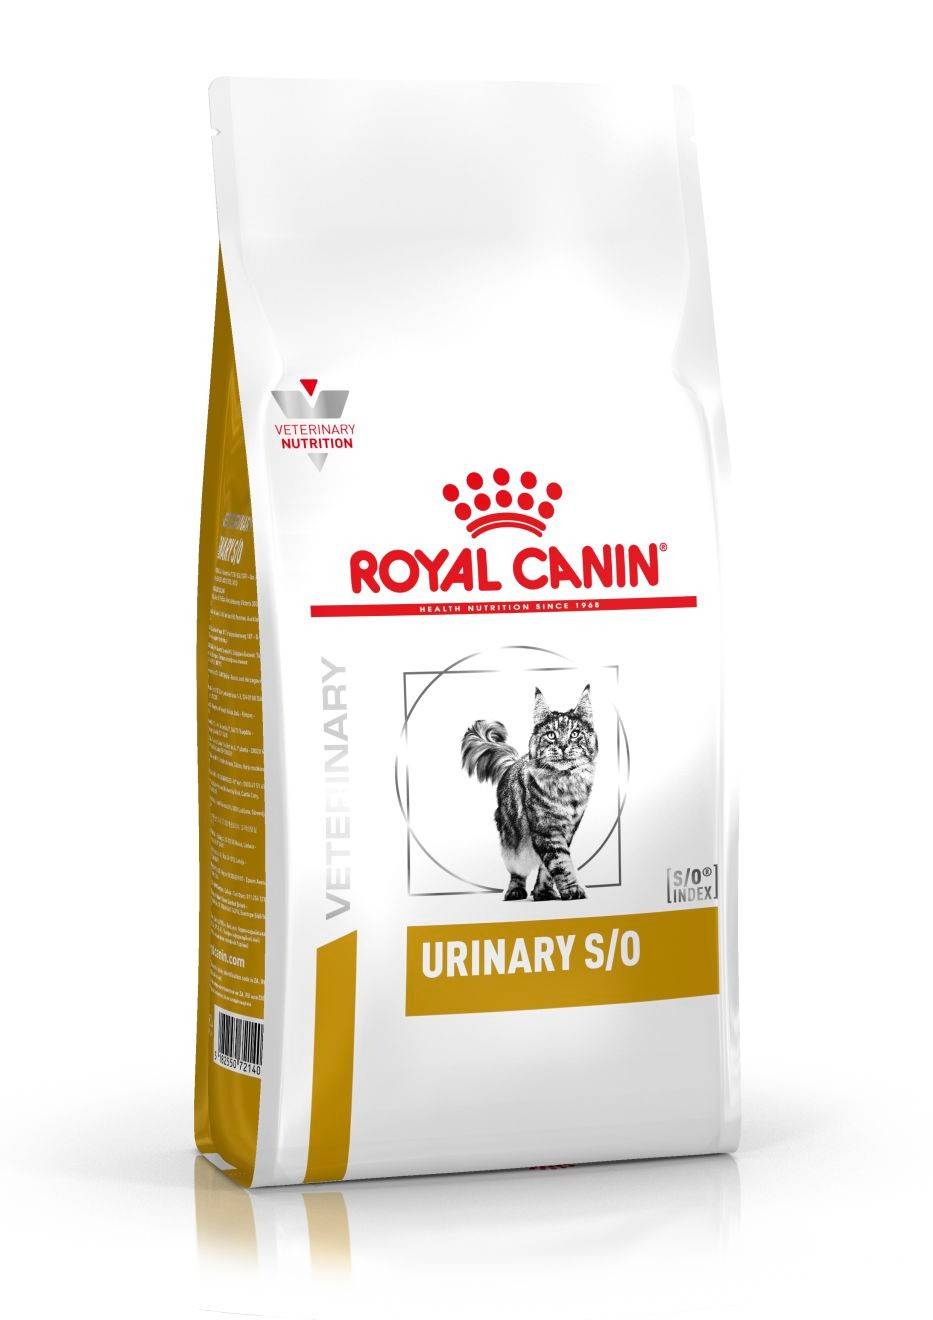 ROYAL CANIN URINARY S/0 FELINE – лікувальний сухий корм для дорослих котів при захворюванні дистальних відділів сечовидільної системи